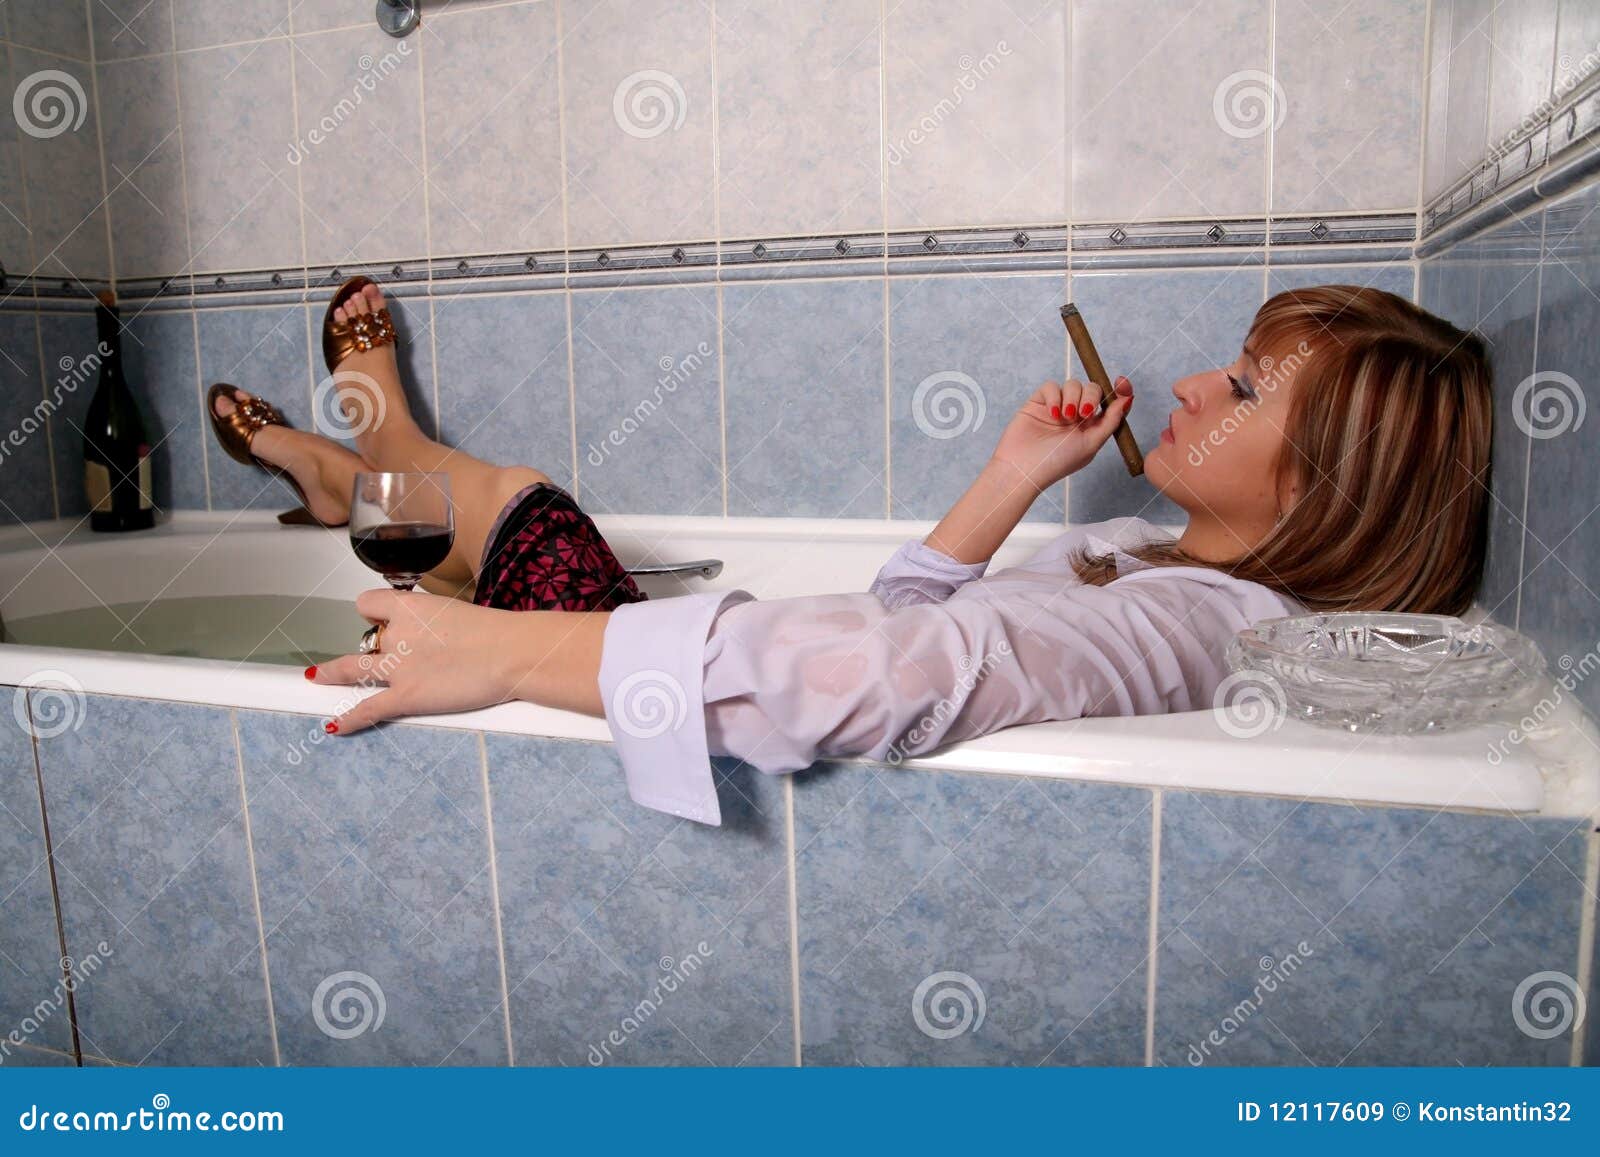 Жена пришла в ванну. Девушка в ванной с сигарой. Курящая девушка в ванной. Девушка выпивает в ванной. Девушка курит в ванной.